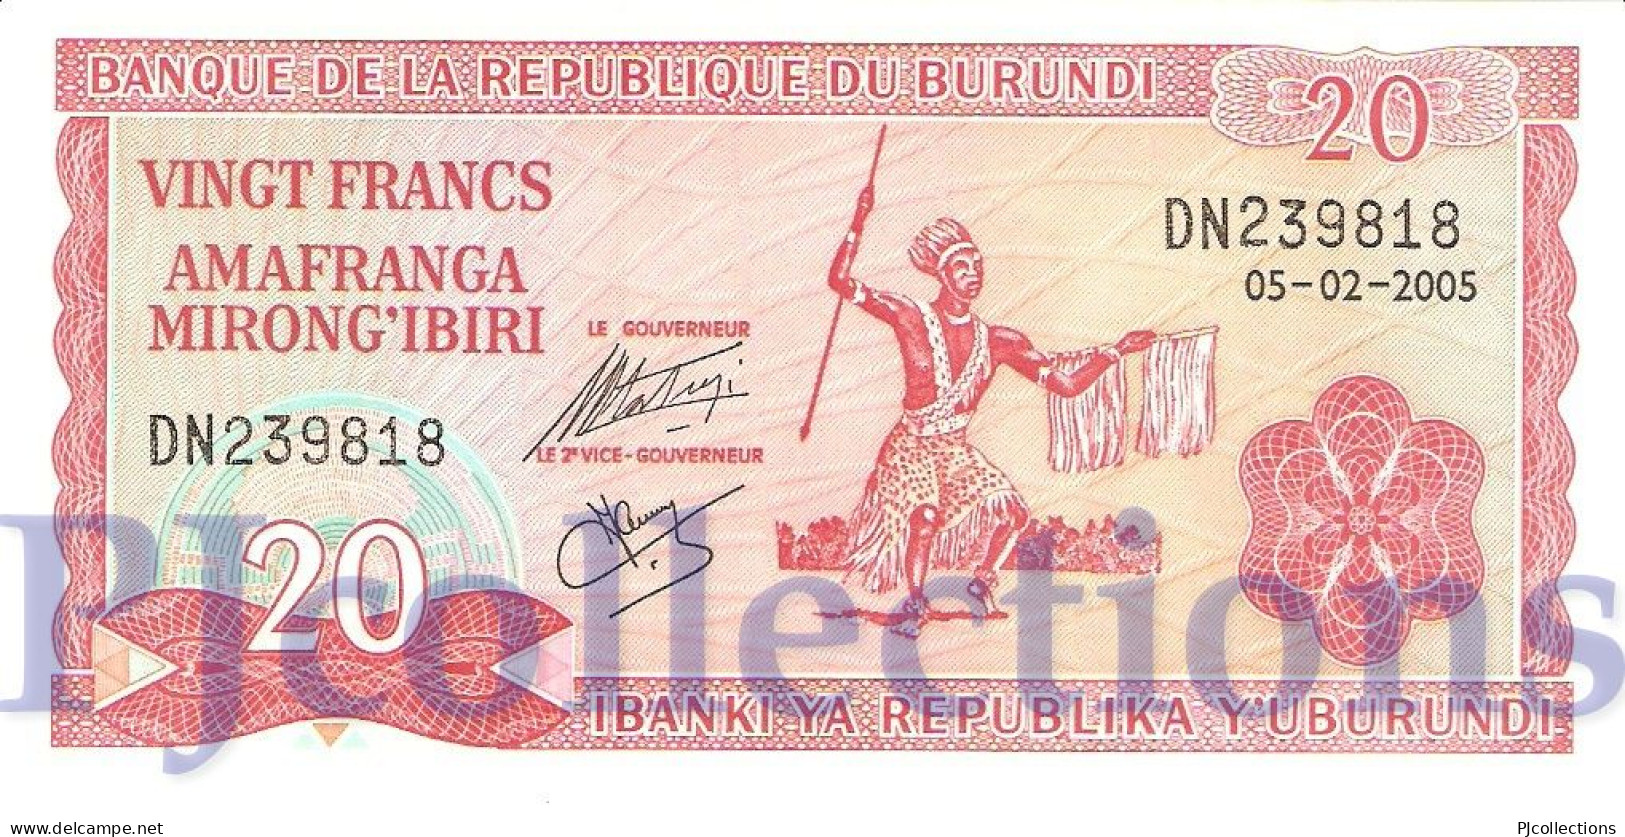 LOT BURUNDI 20 FRANCS 2005 PICK 27d UNC X 5 PCS - Burundi